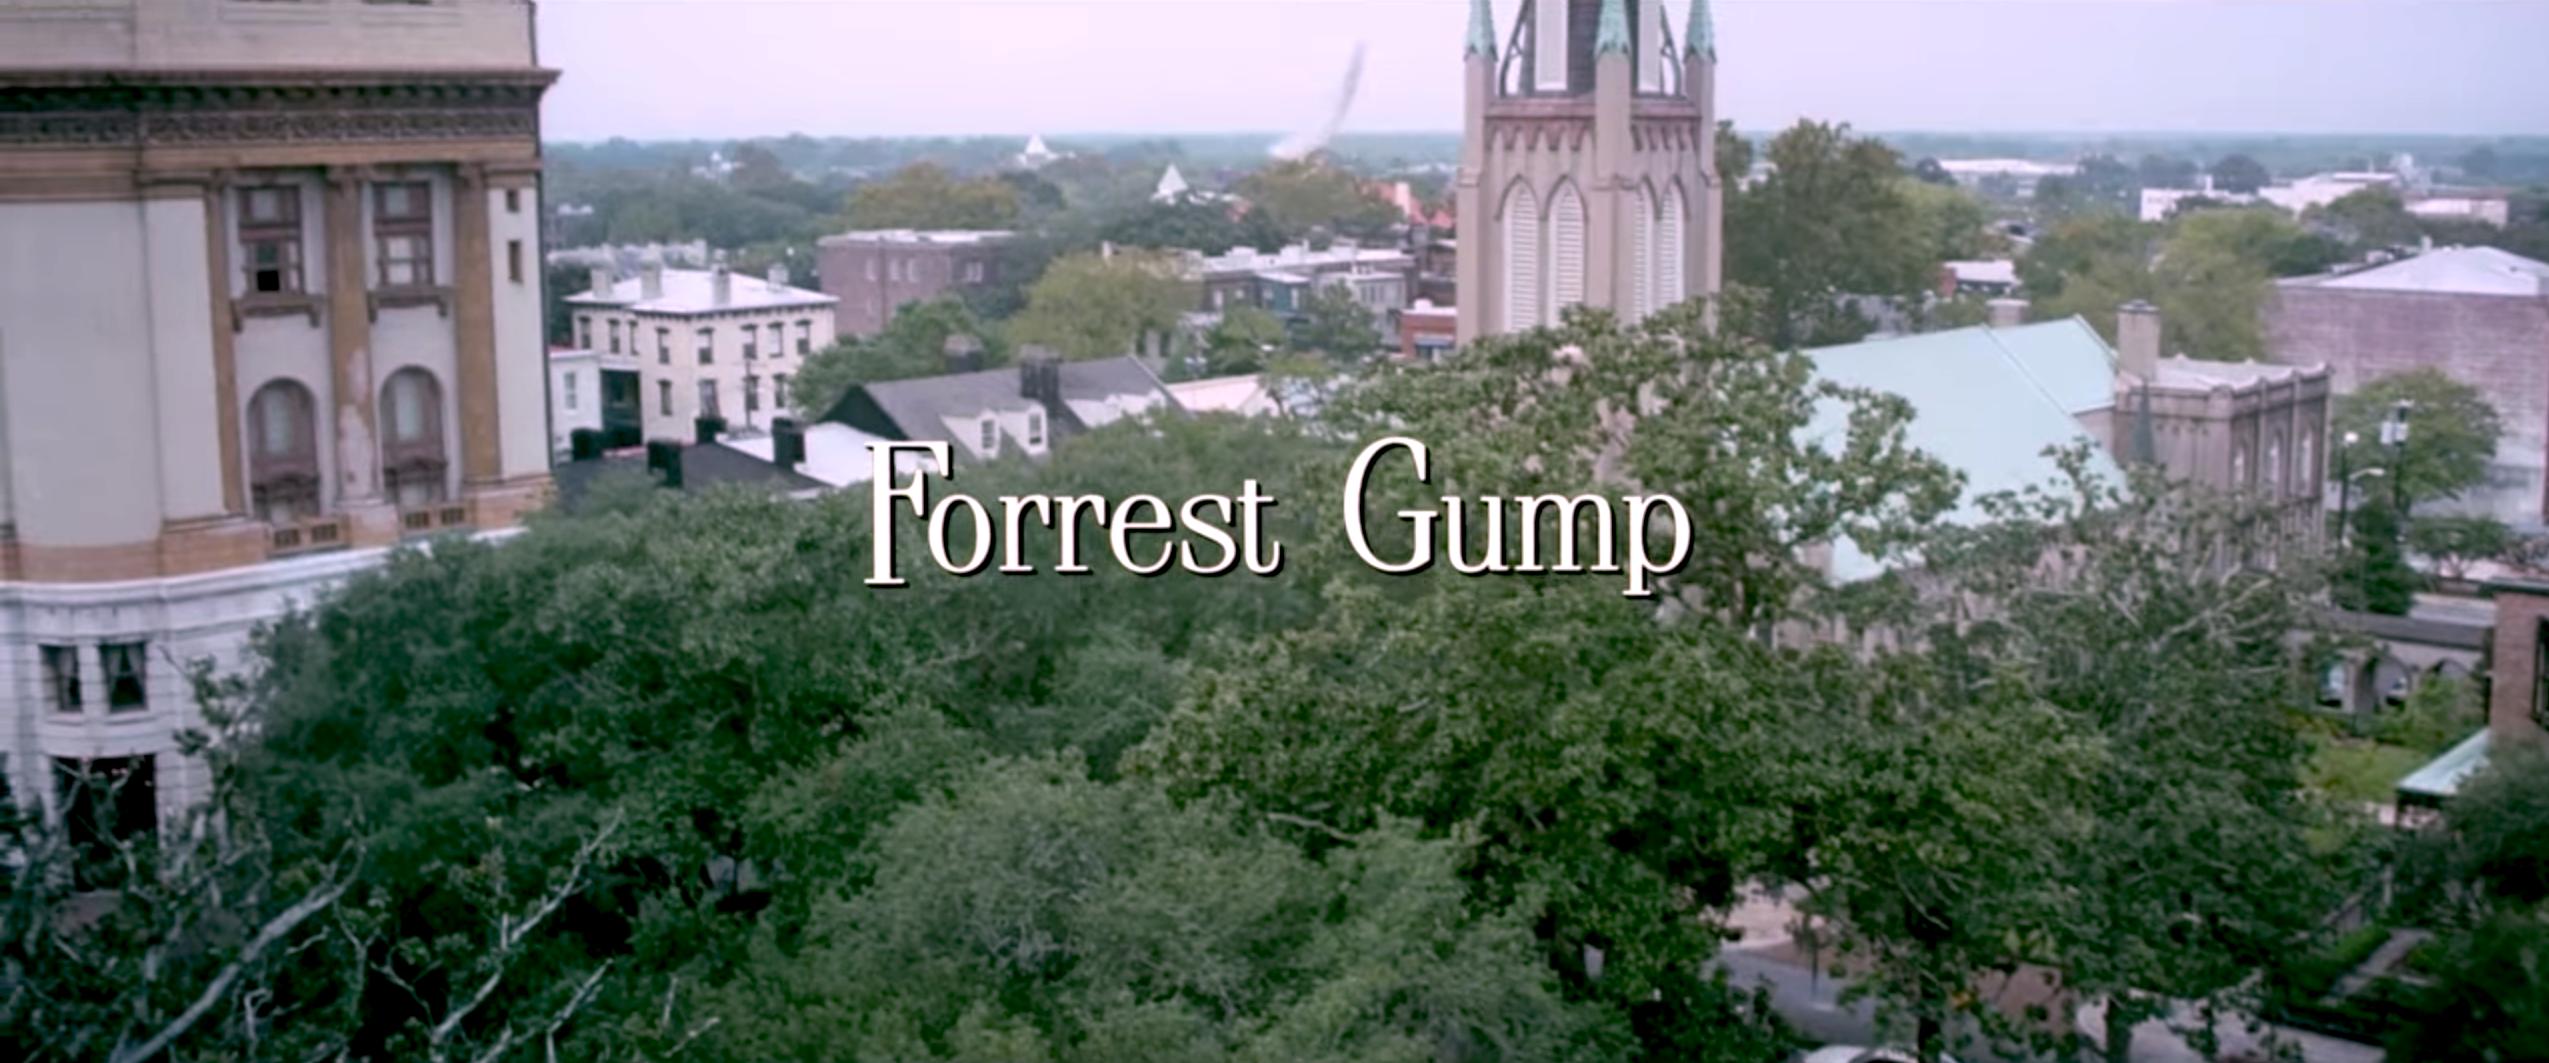 Filme: Das waren unsere Kinojahre: Forrest Gump | Season 2 | Episode 4